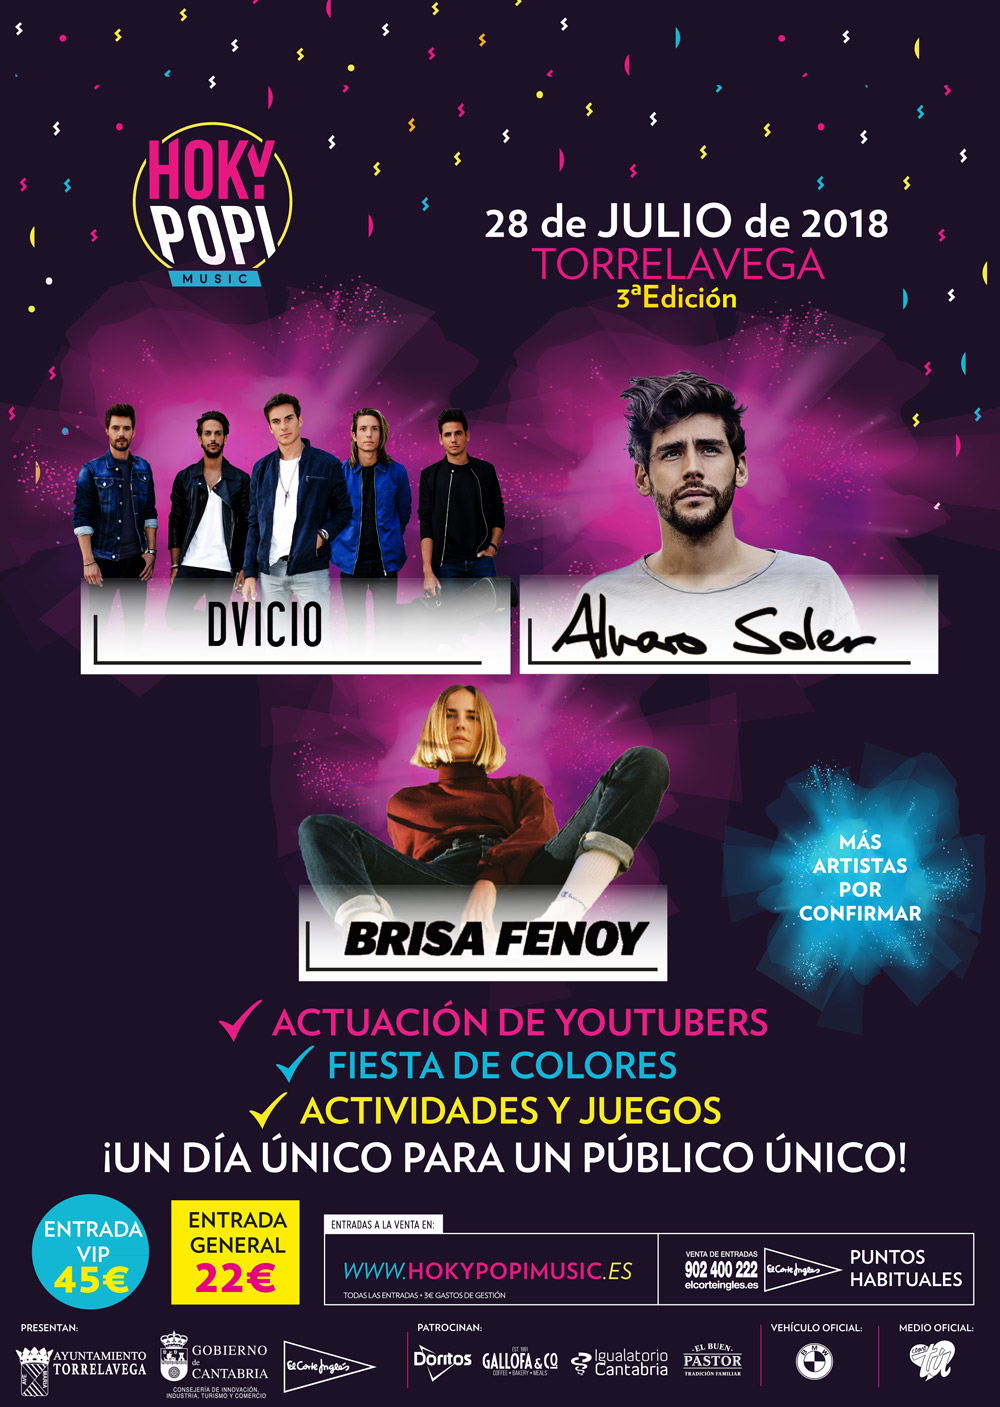 Álvaro Soler, Dvicio, Brisa Fenoy y Ana Mena, primeros confirmados de Hoky Popi Music 2018